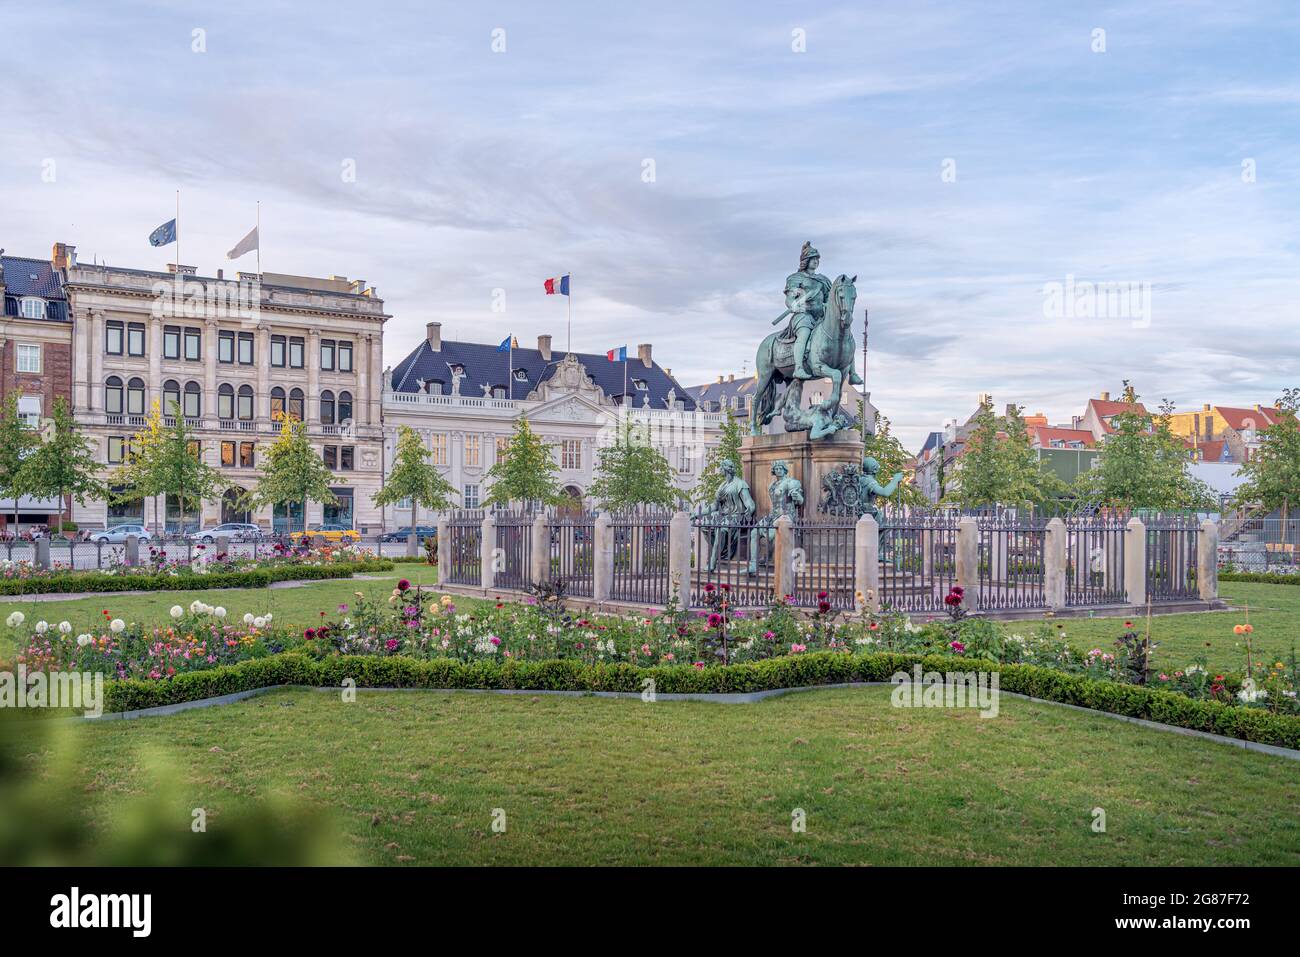 Kongens Nystorv Platz mit Christians V. Statue und Thott Mansion (Französische Botschaft) im Hintergrund - Kopenhagen, Dänemark Stockfoto